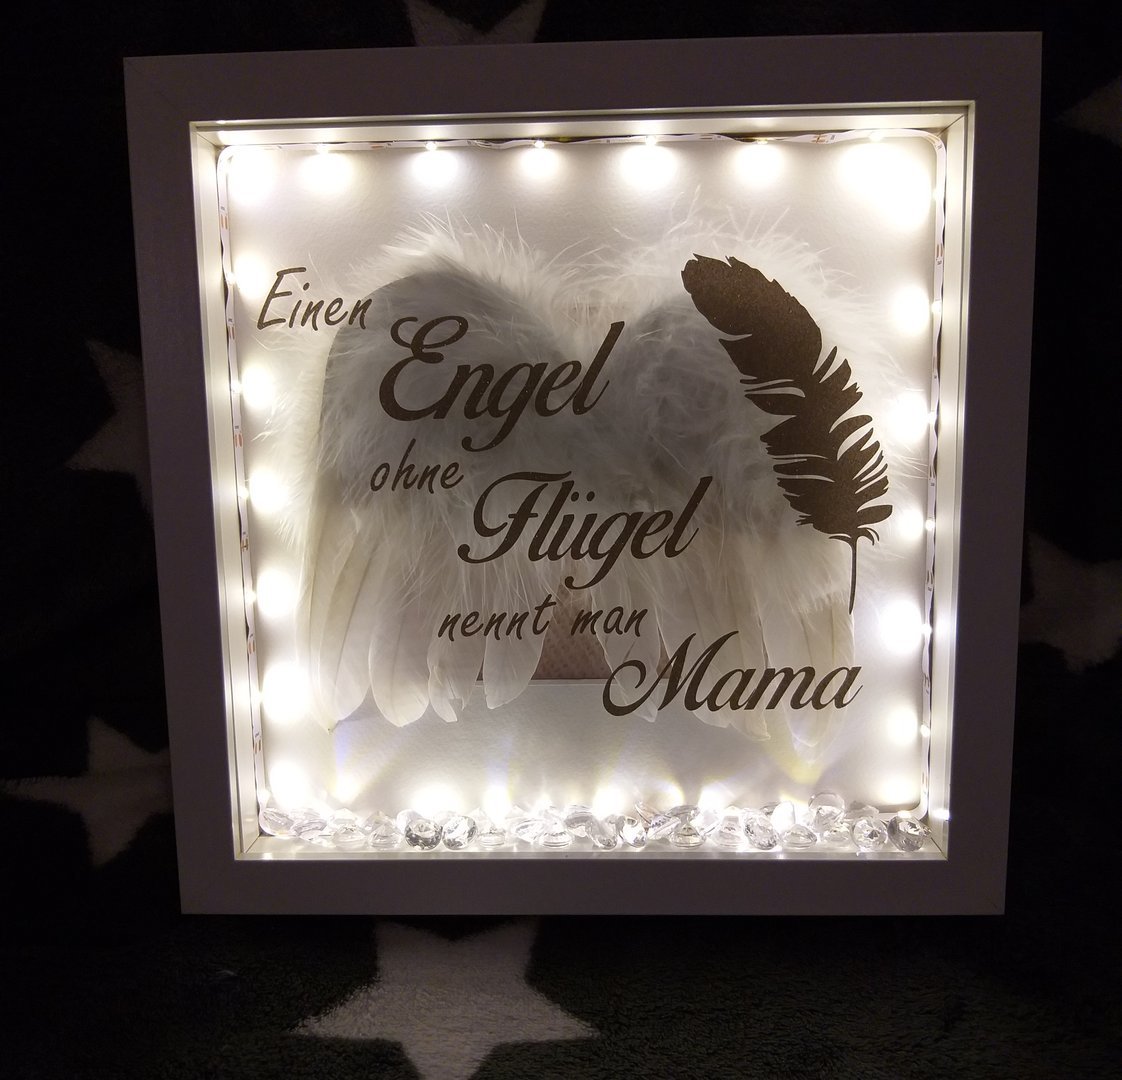 Flügel ohne Mama Babystübchen - nennt Engel man Einen